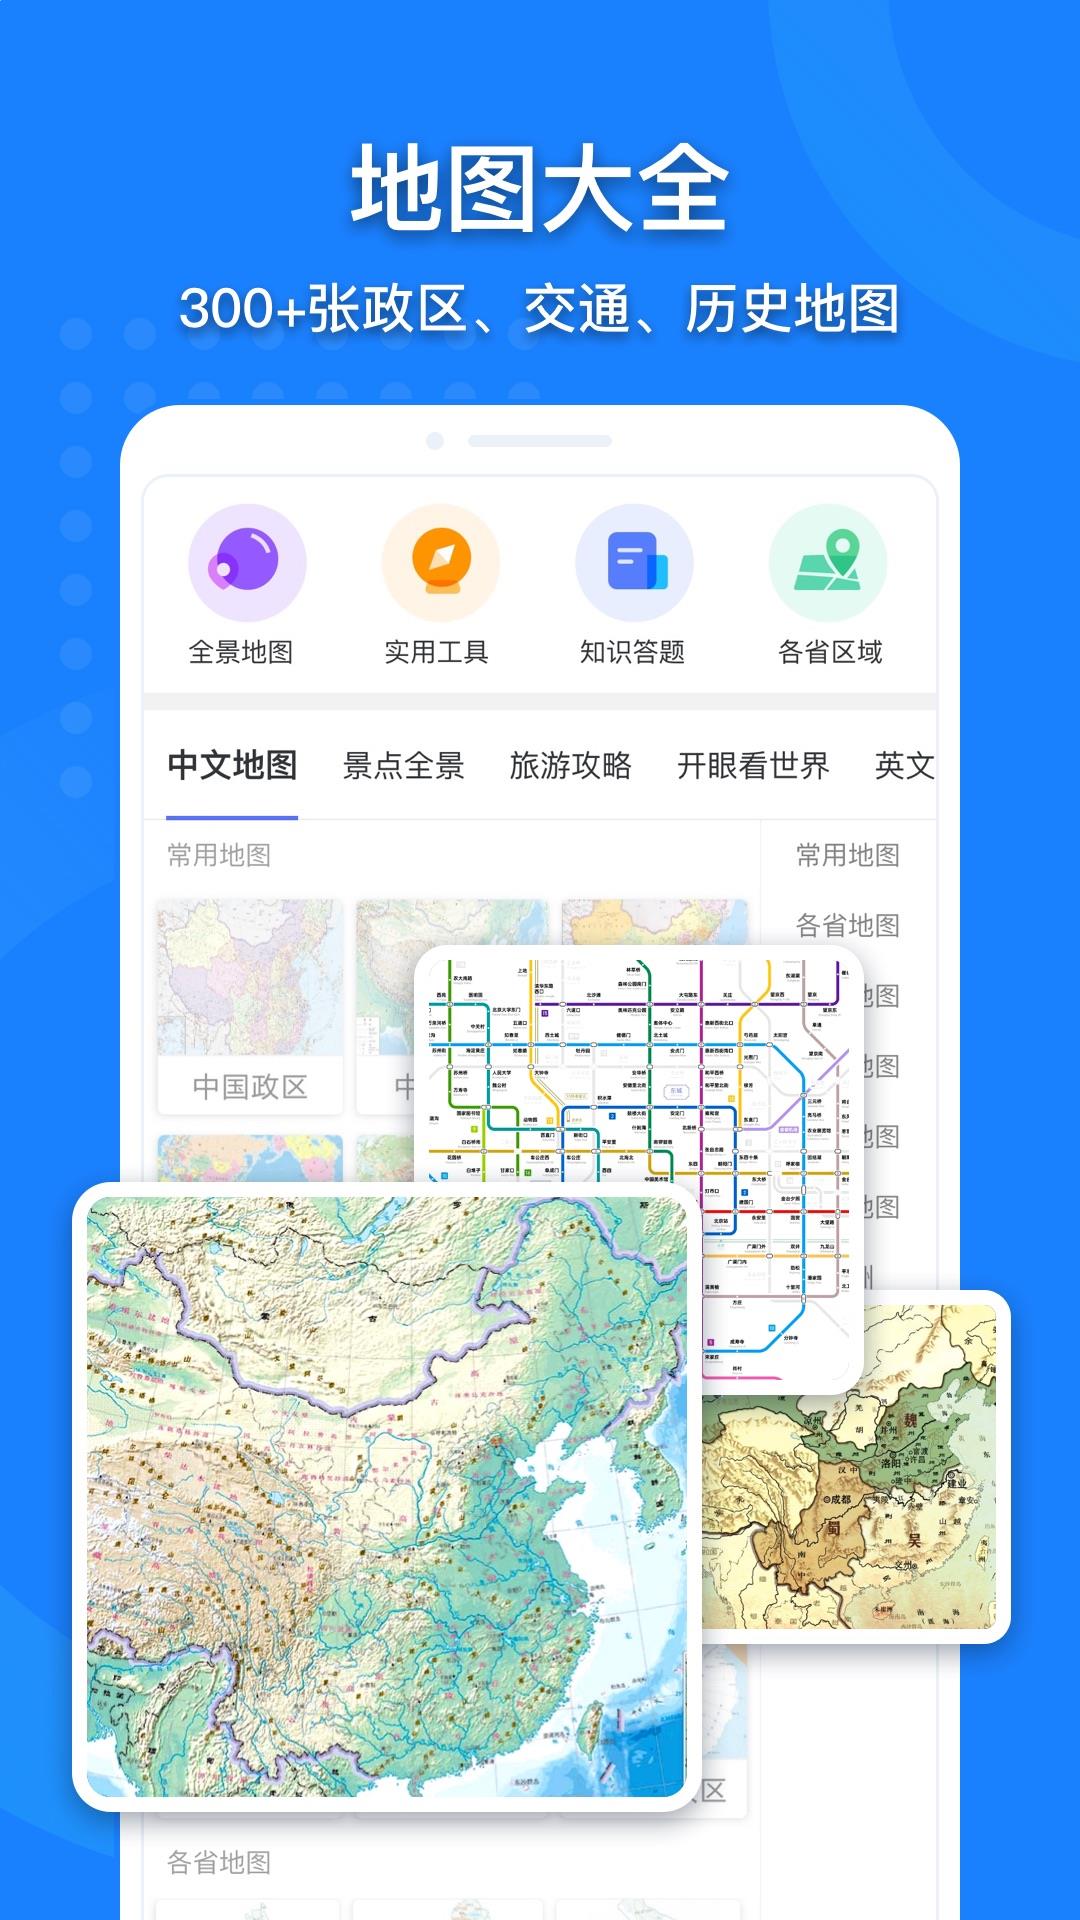 中国地图高清版大图(2)